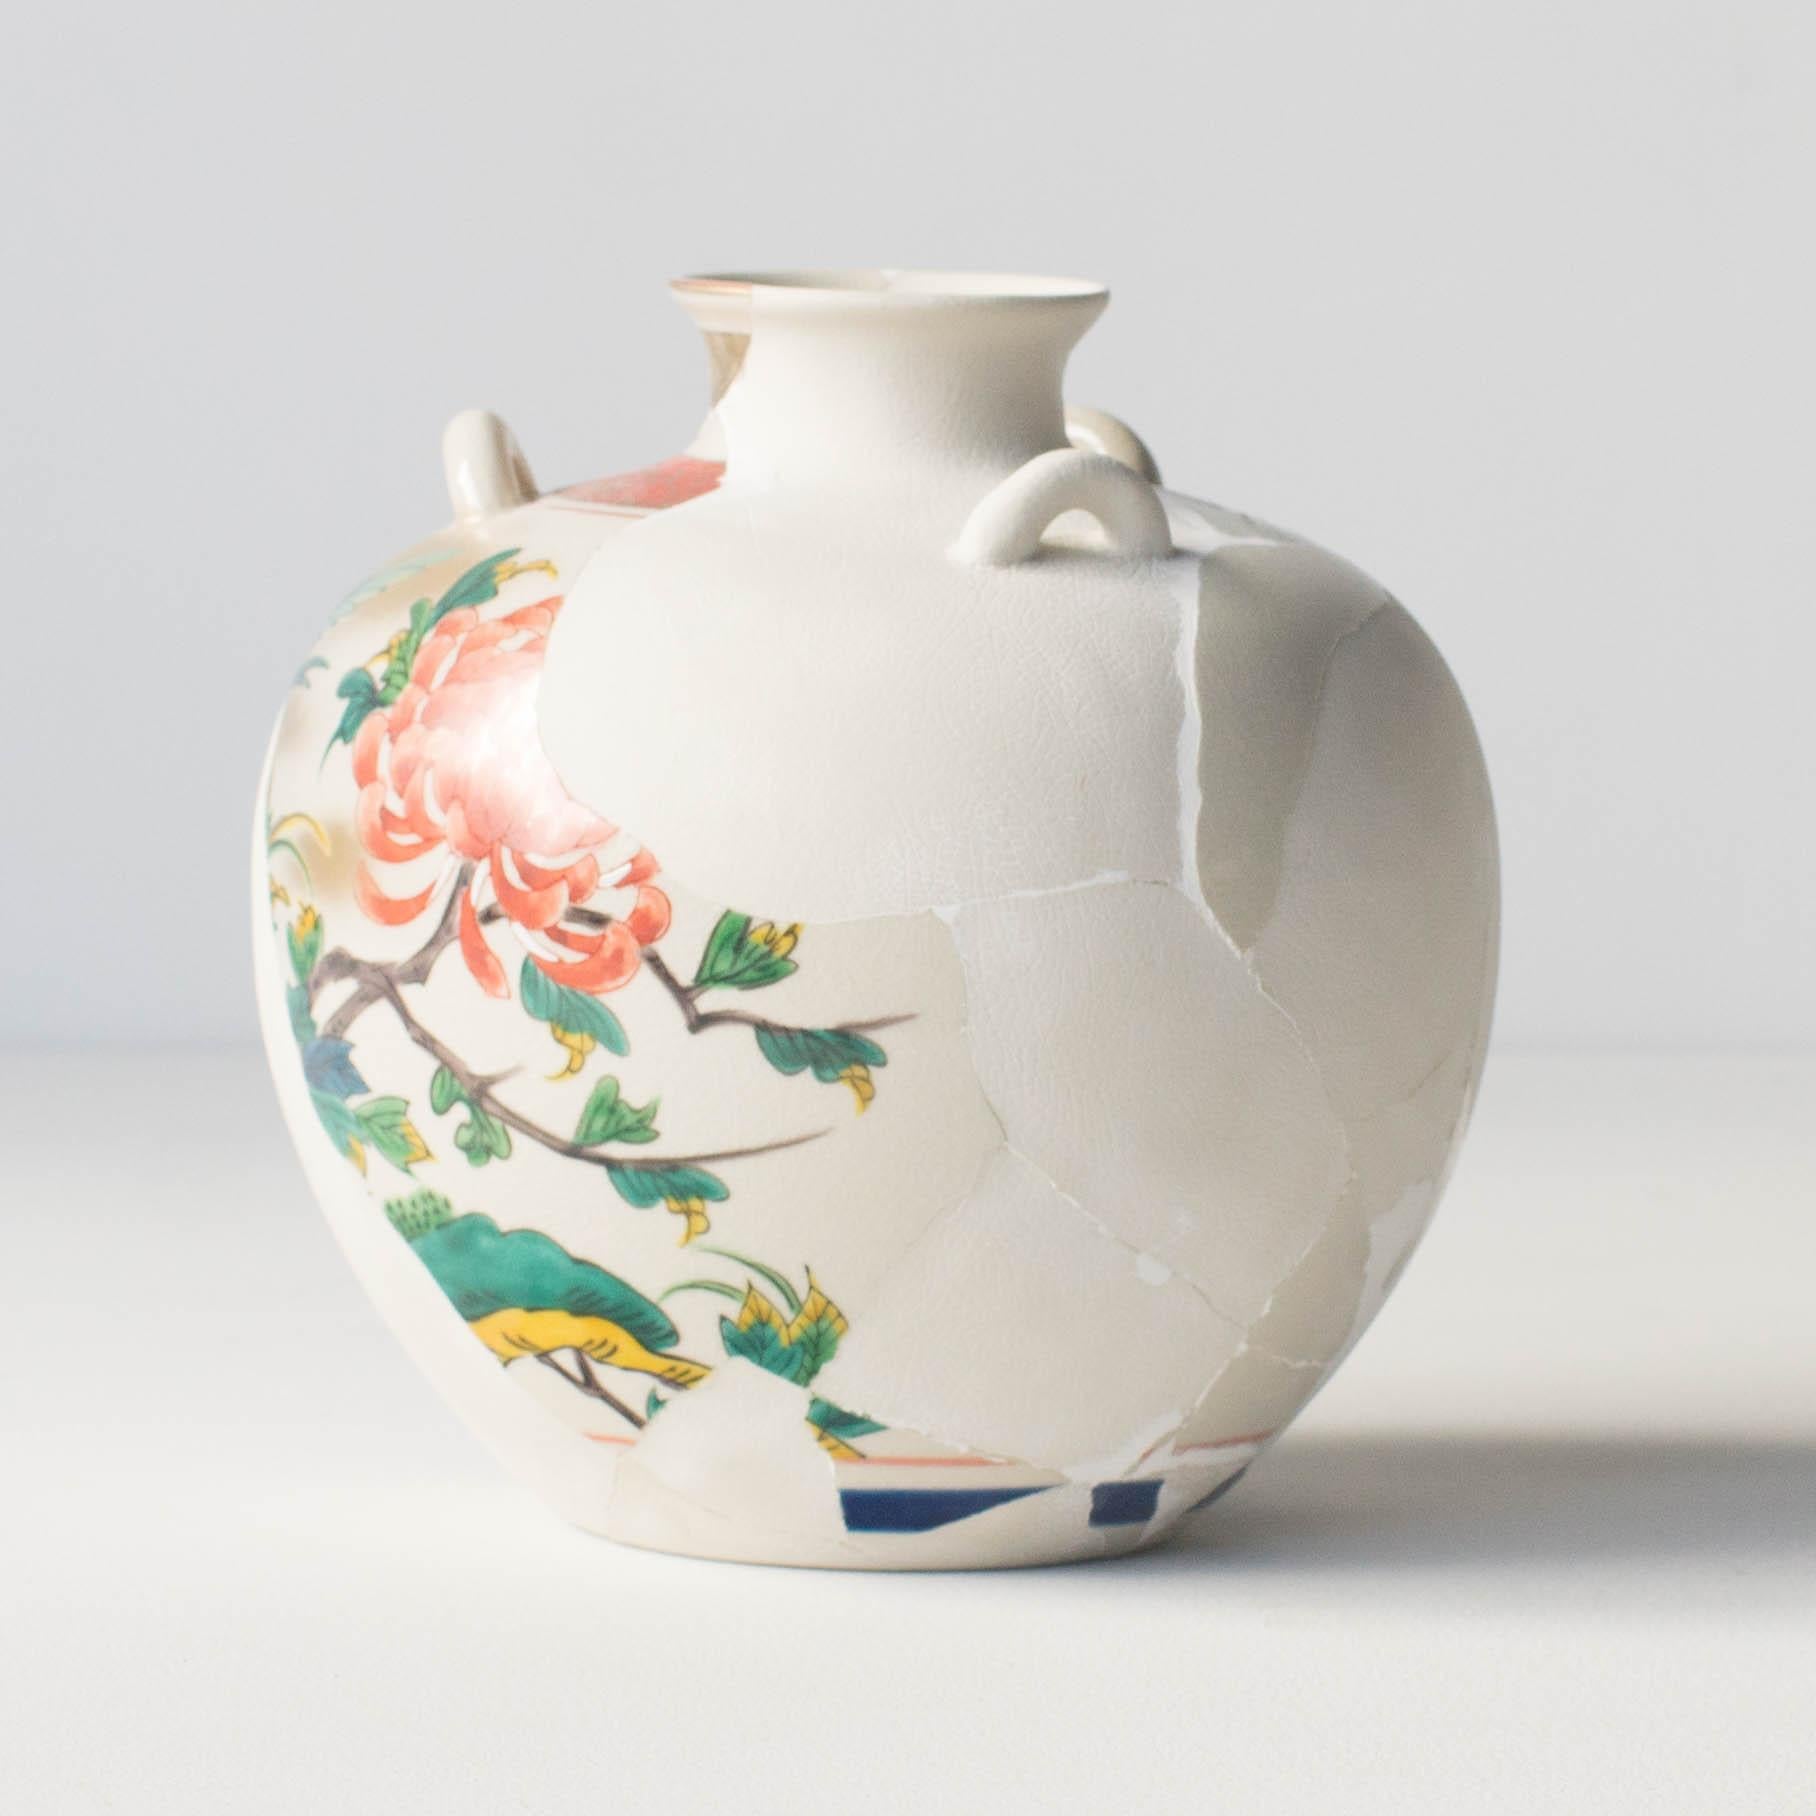 Japonisme Reconstructed Ceramics #3 Contemporary Zen Japonism Style For Sale